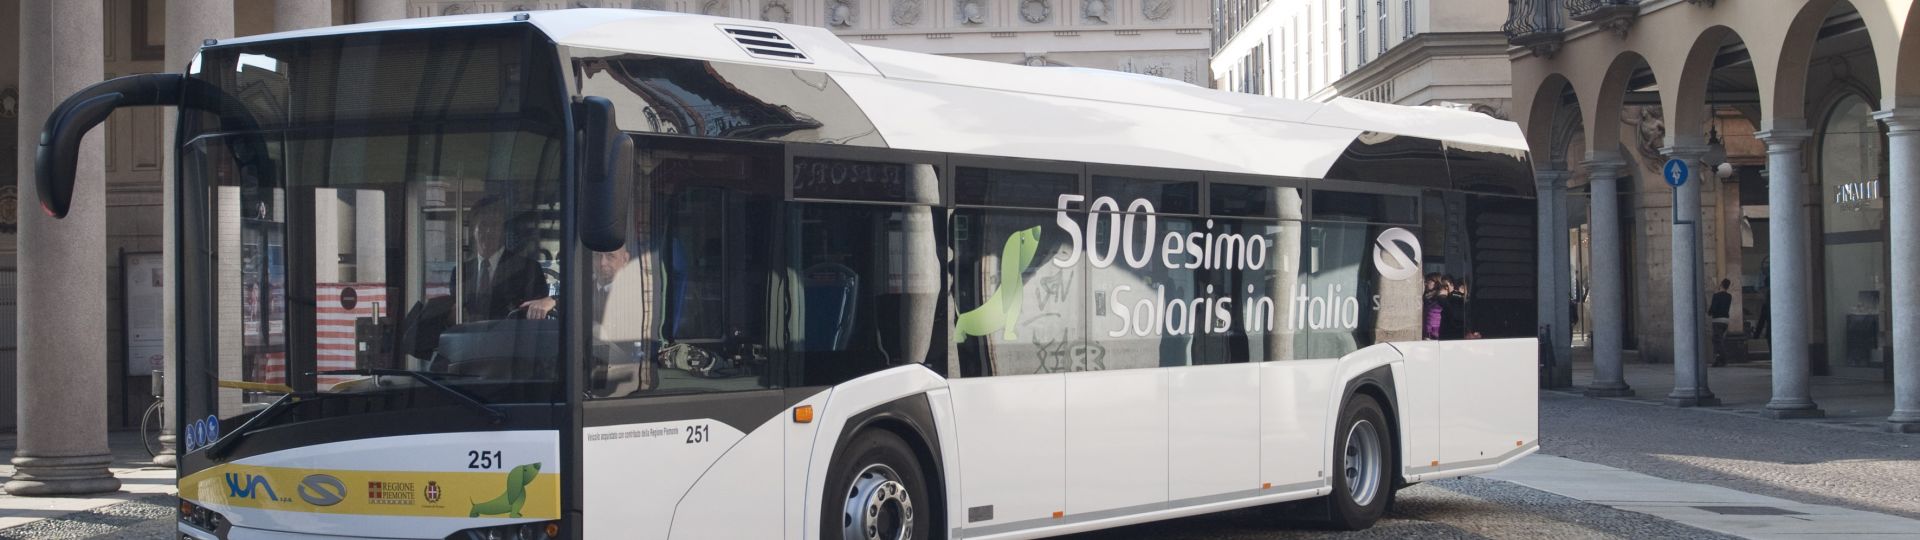 500th Solaris bus in Italy